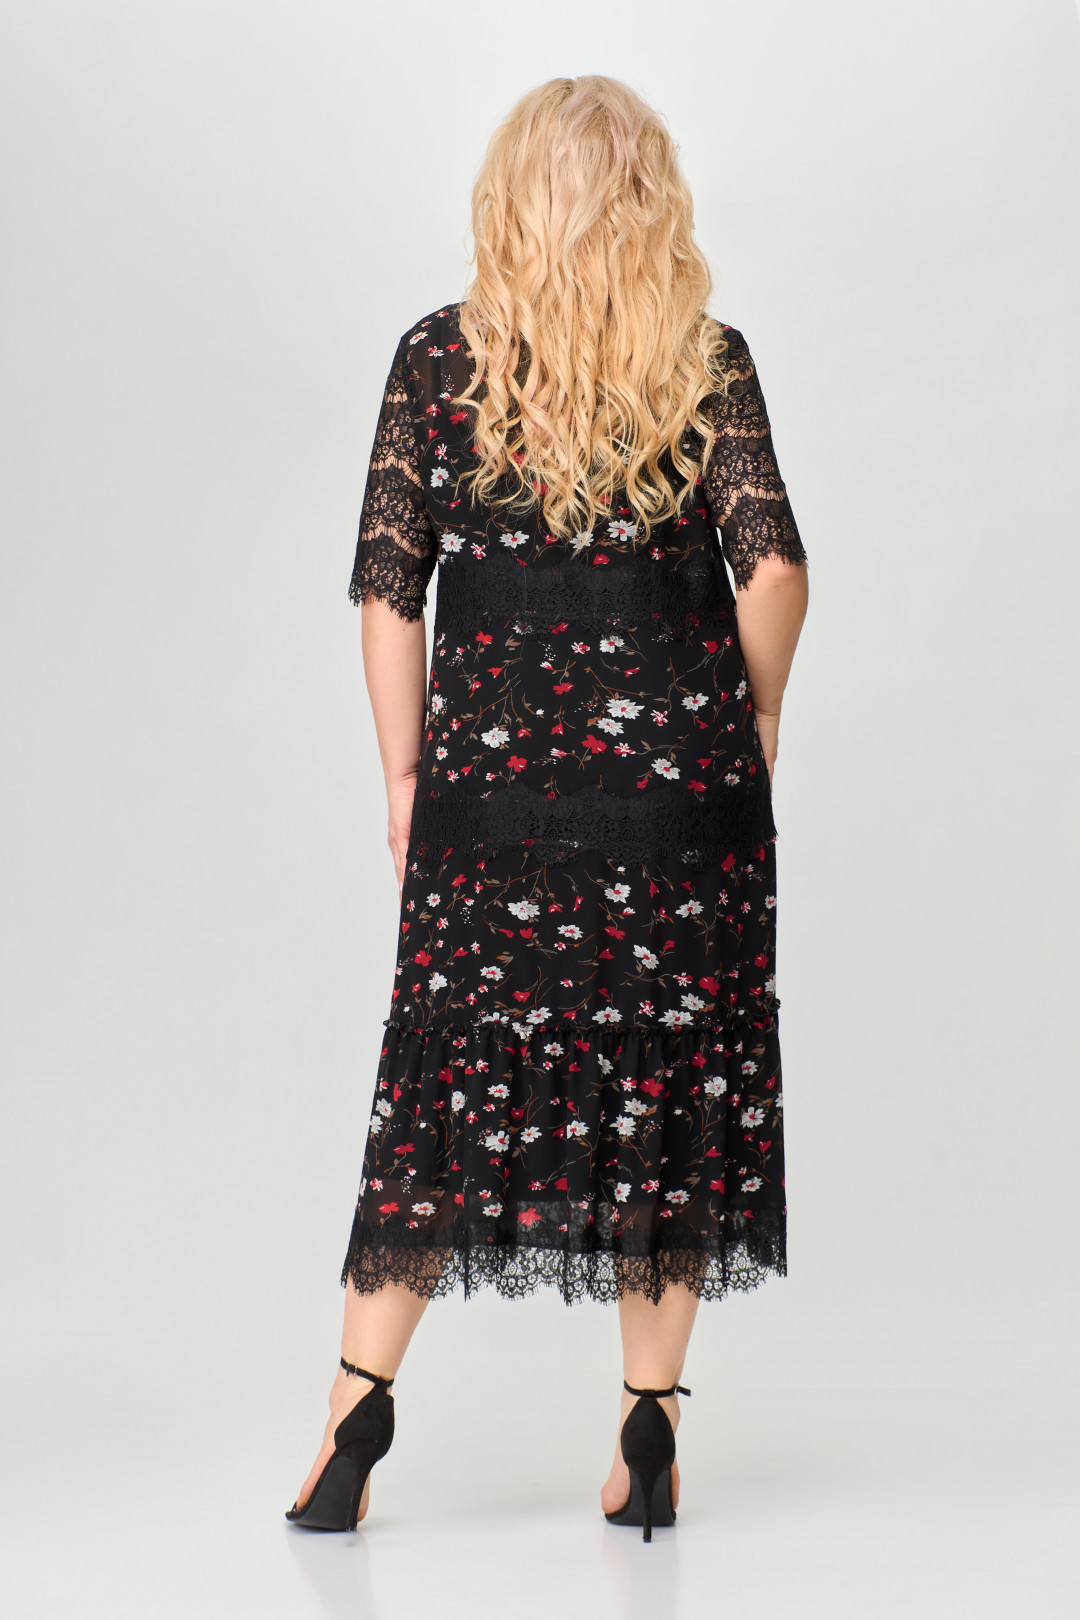 Платье Светлана-Стиль 1505 черный+красные цветы